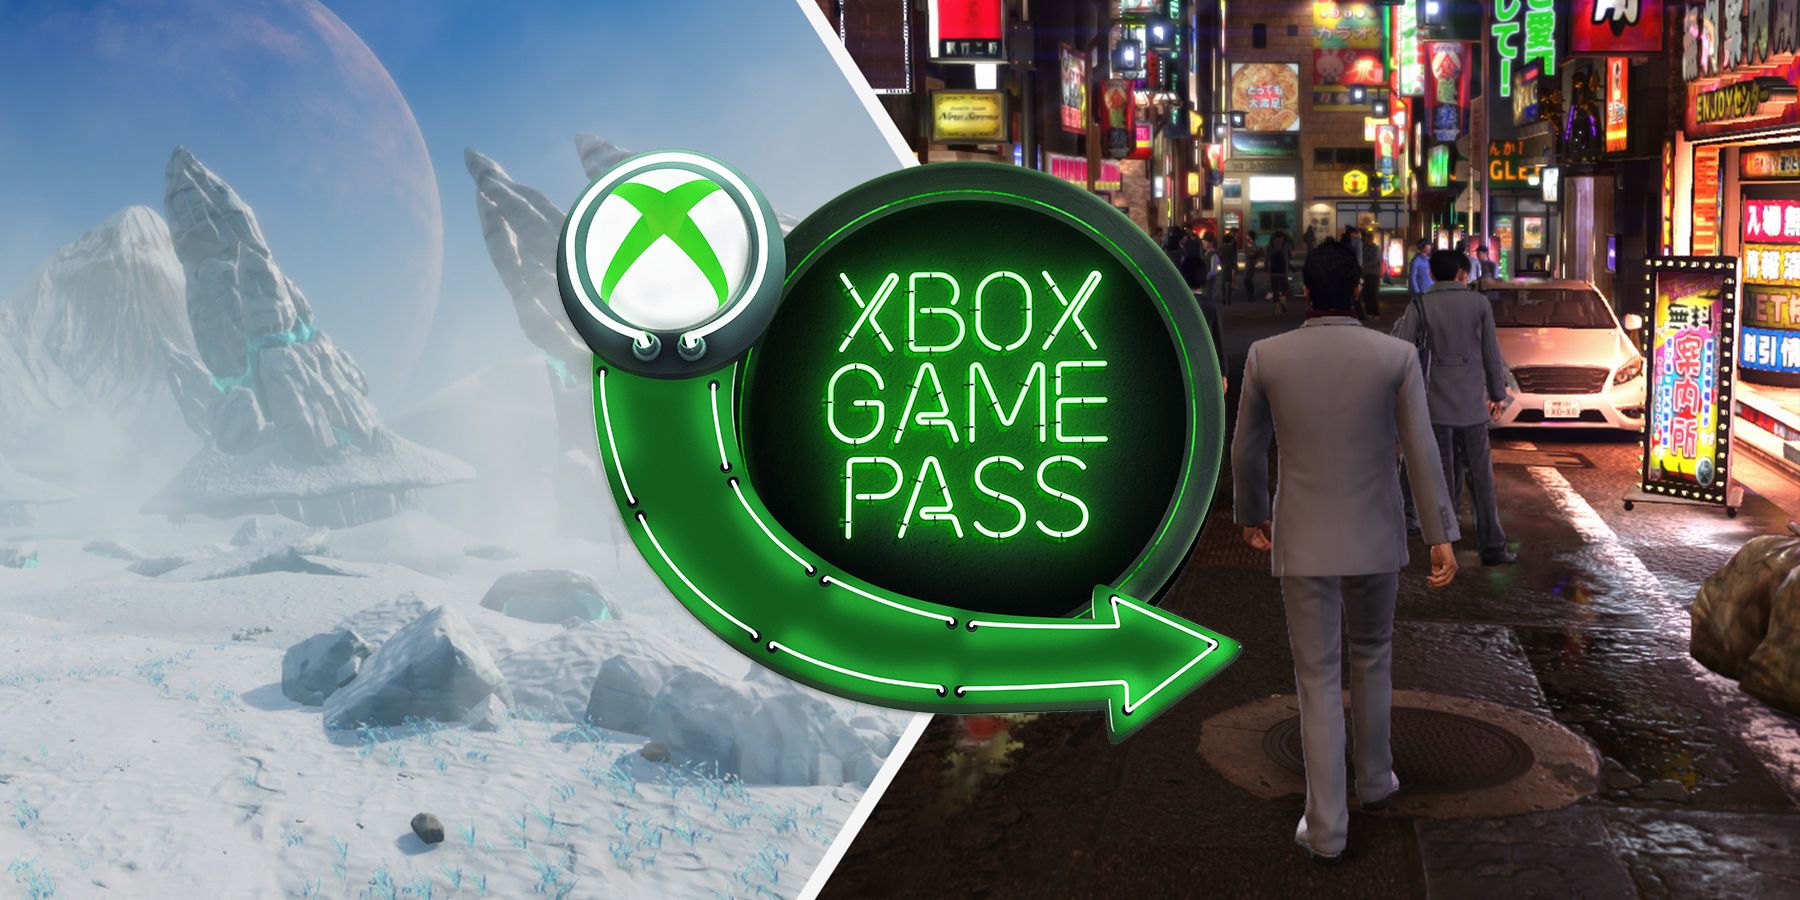 Τα καλύτερα παιχνίδια ανοιχτού κόσμου στο Xbox Game Pass (Νοέμβριος 2021)